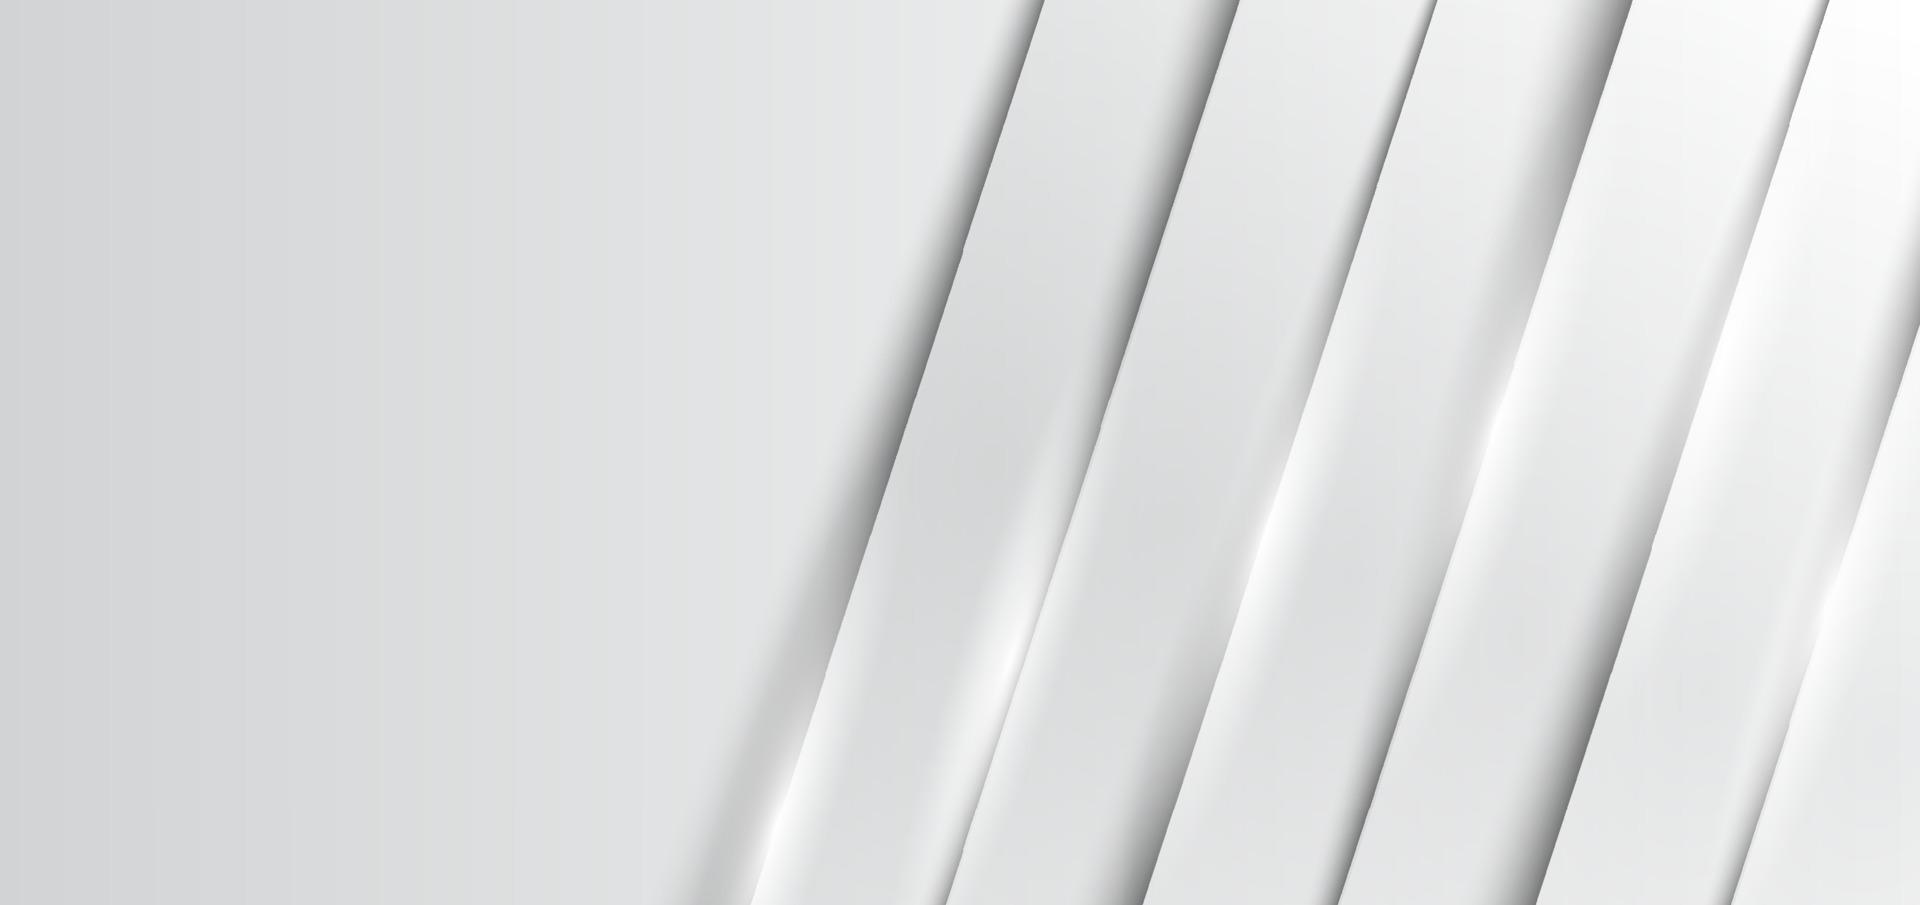 sjabloon abstract banner web witte en grijze overlapping laag dimensie met verlichting op schone achtergrond vector